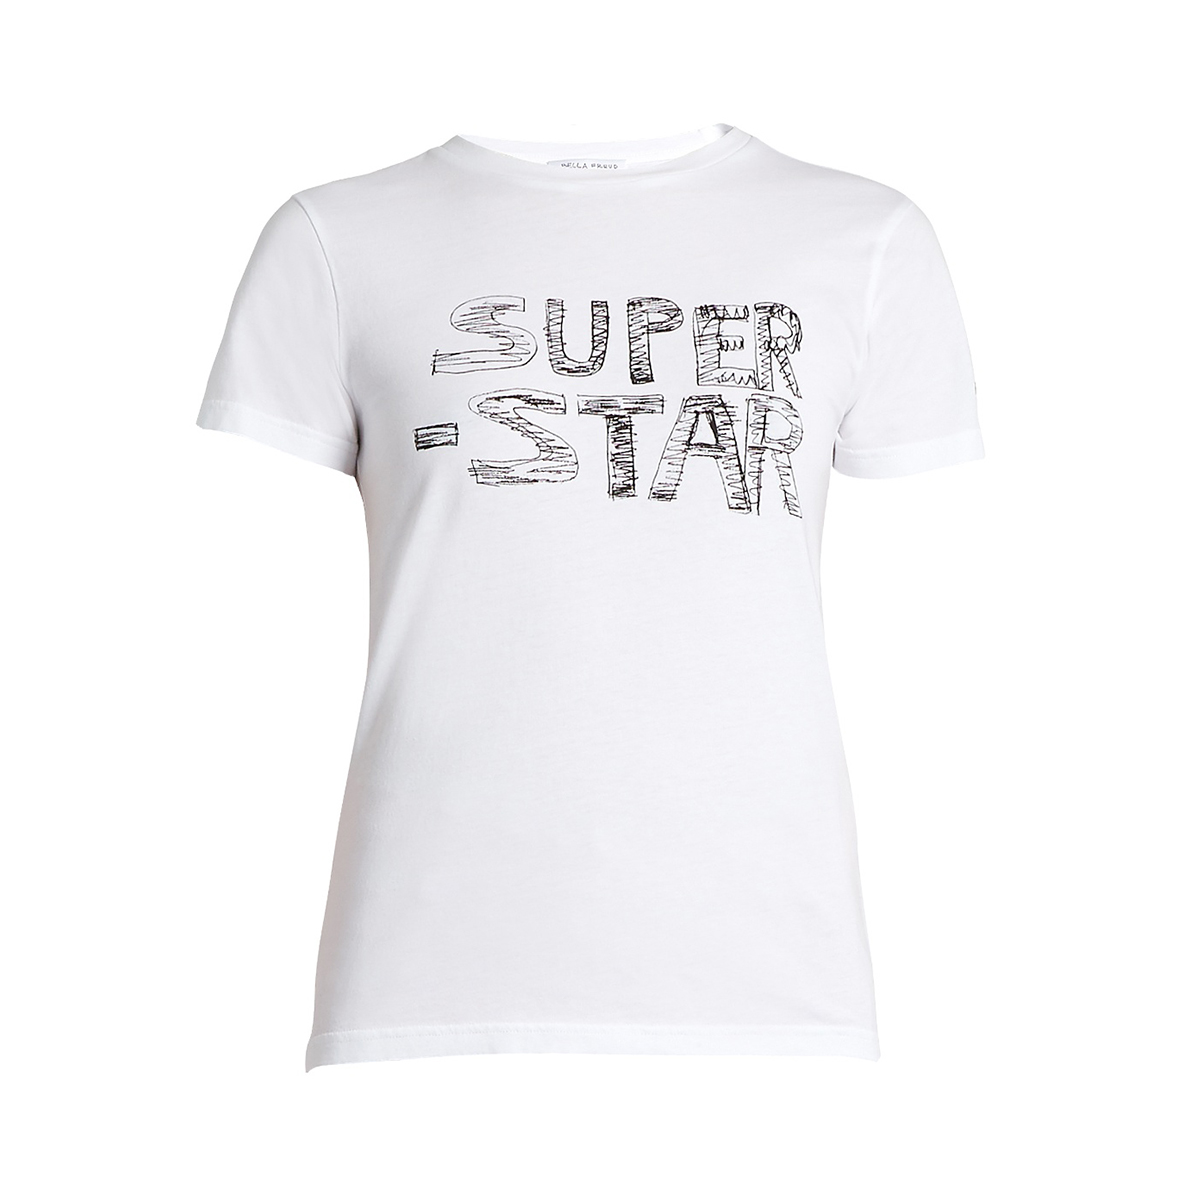 Super-star T-shirt